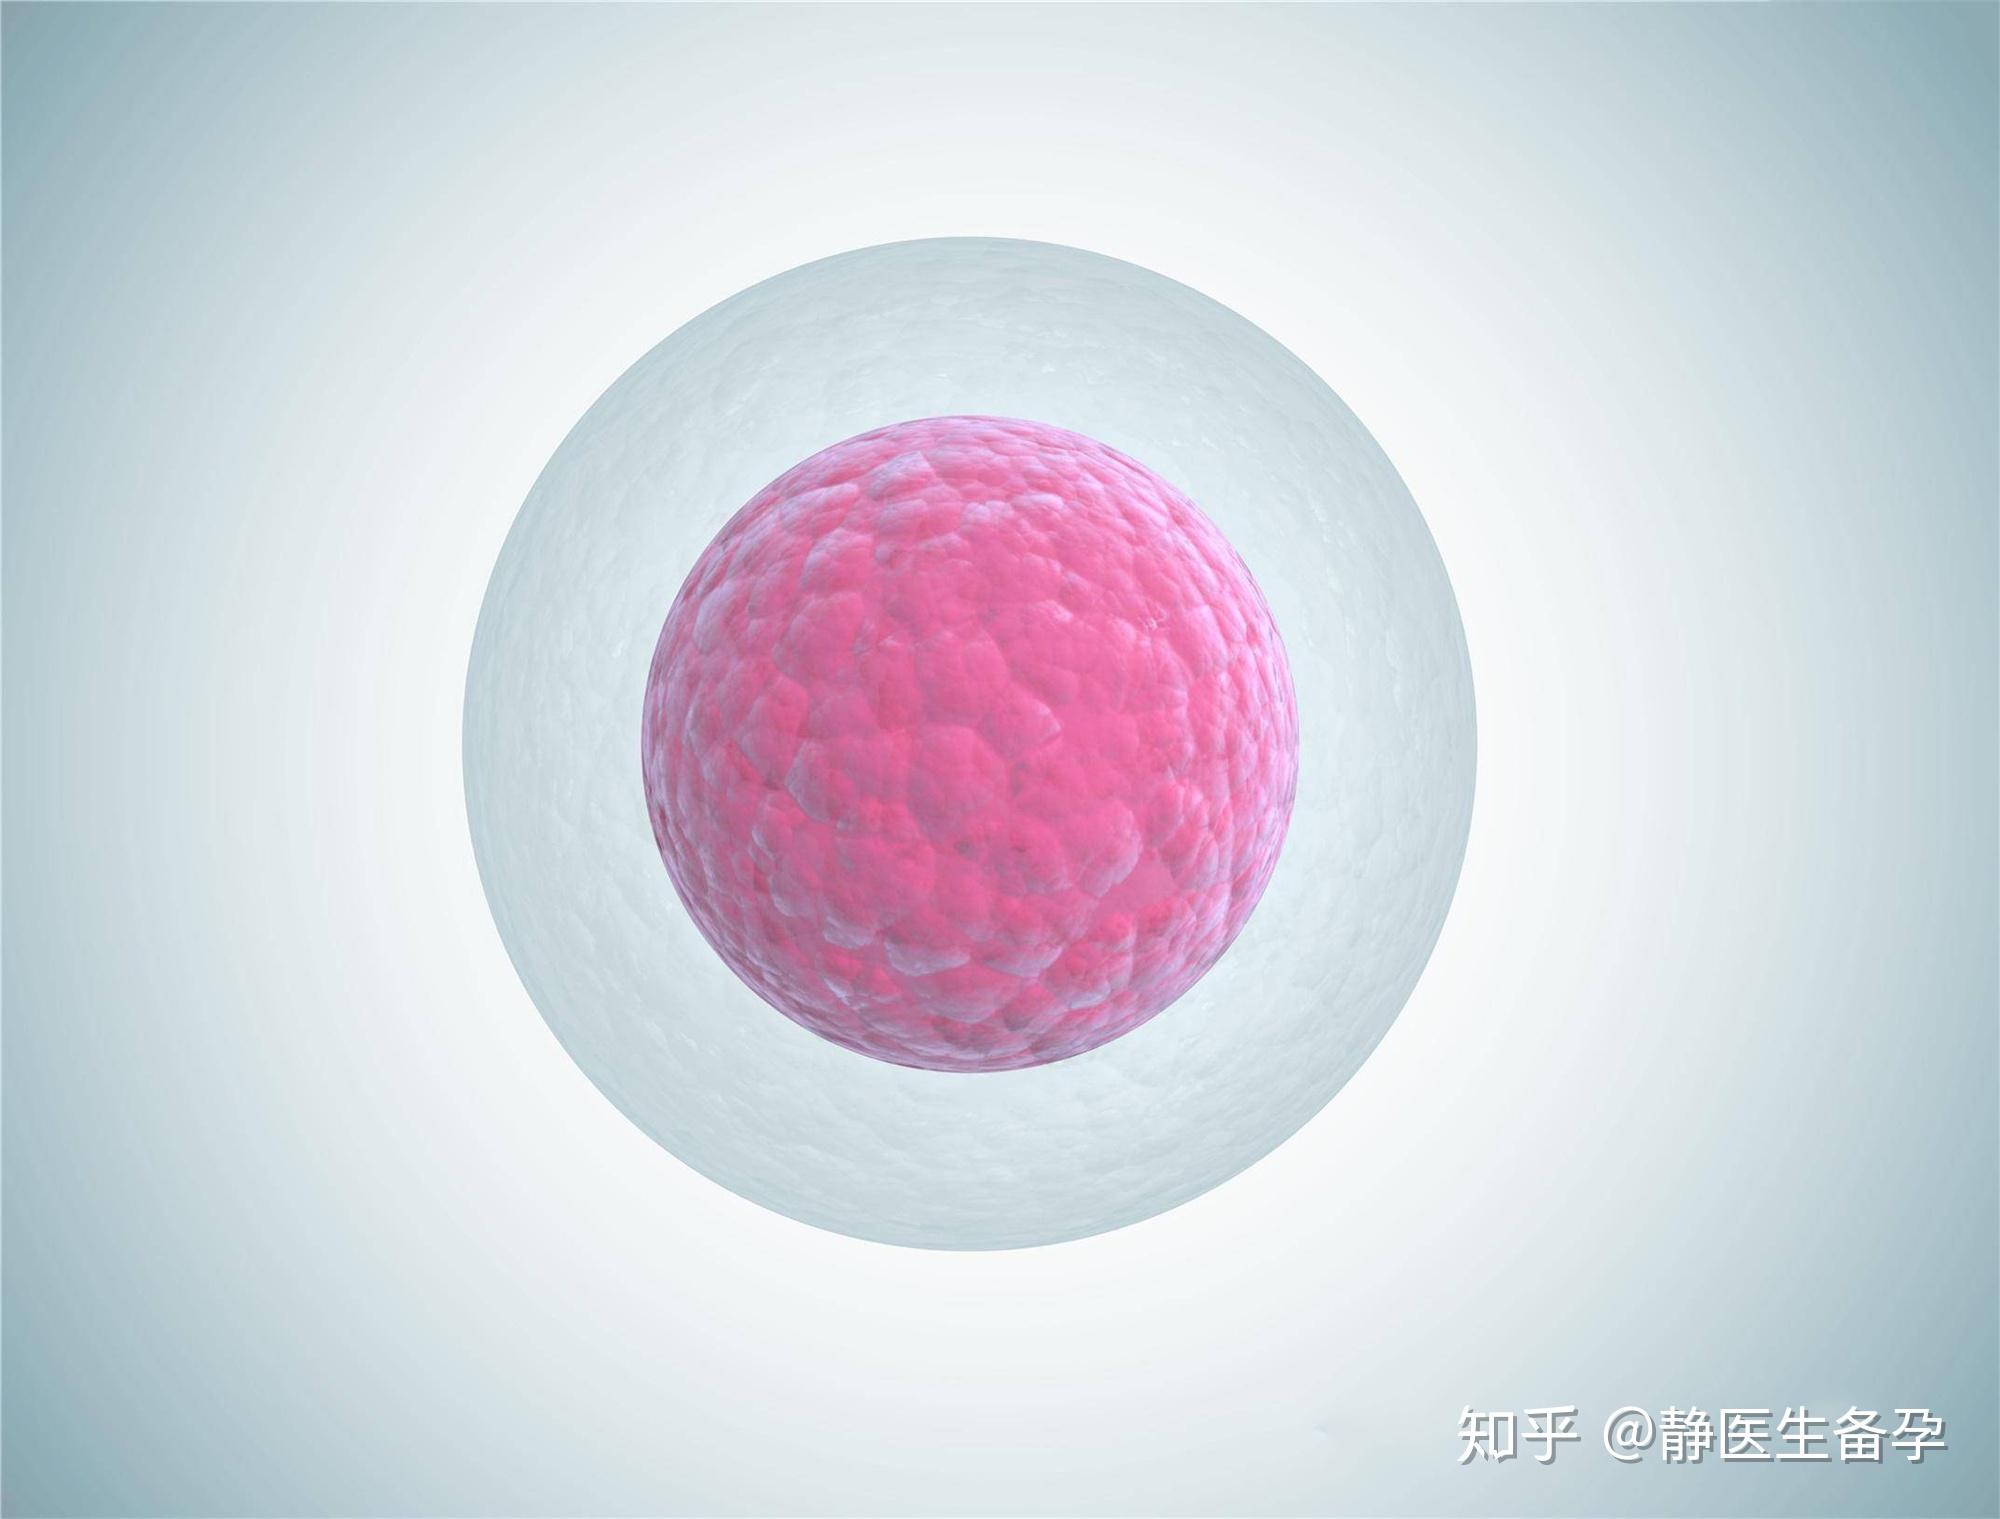 人体受精卵细胞受孕发育全过程医学三维动画视频素材,生物医疗视频素材下载,高清1920X1080视频素材下载,凌点视频素材网,编号:169856